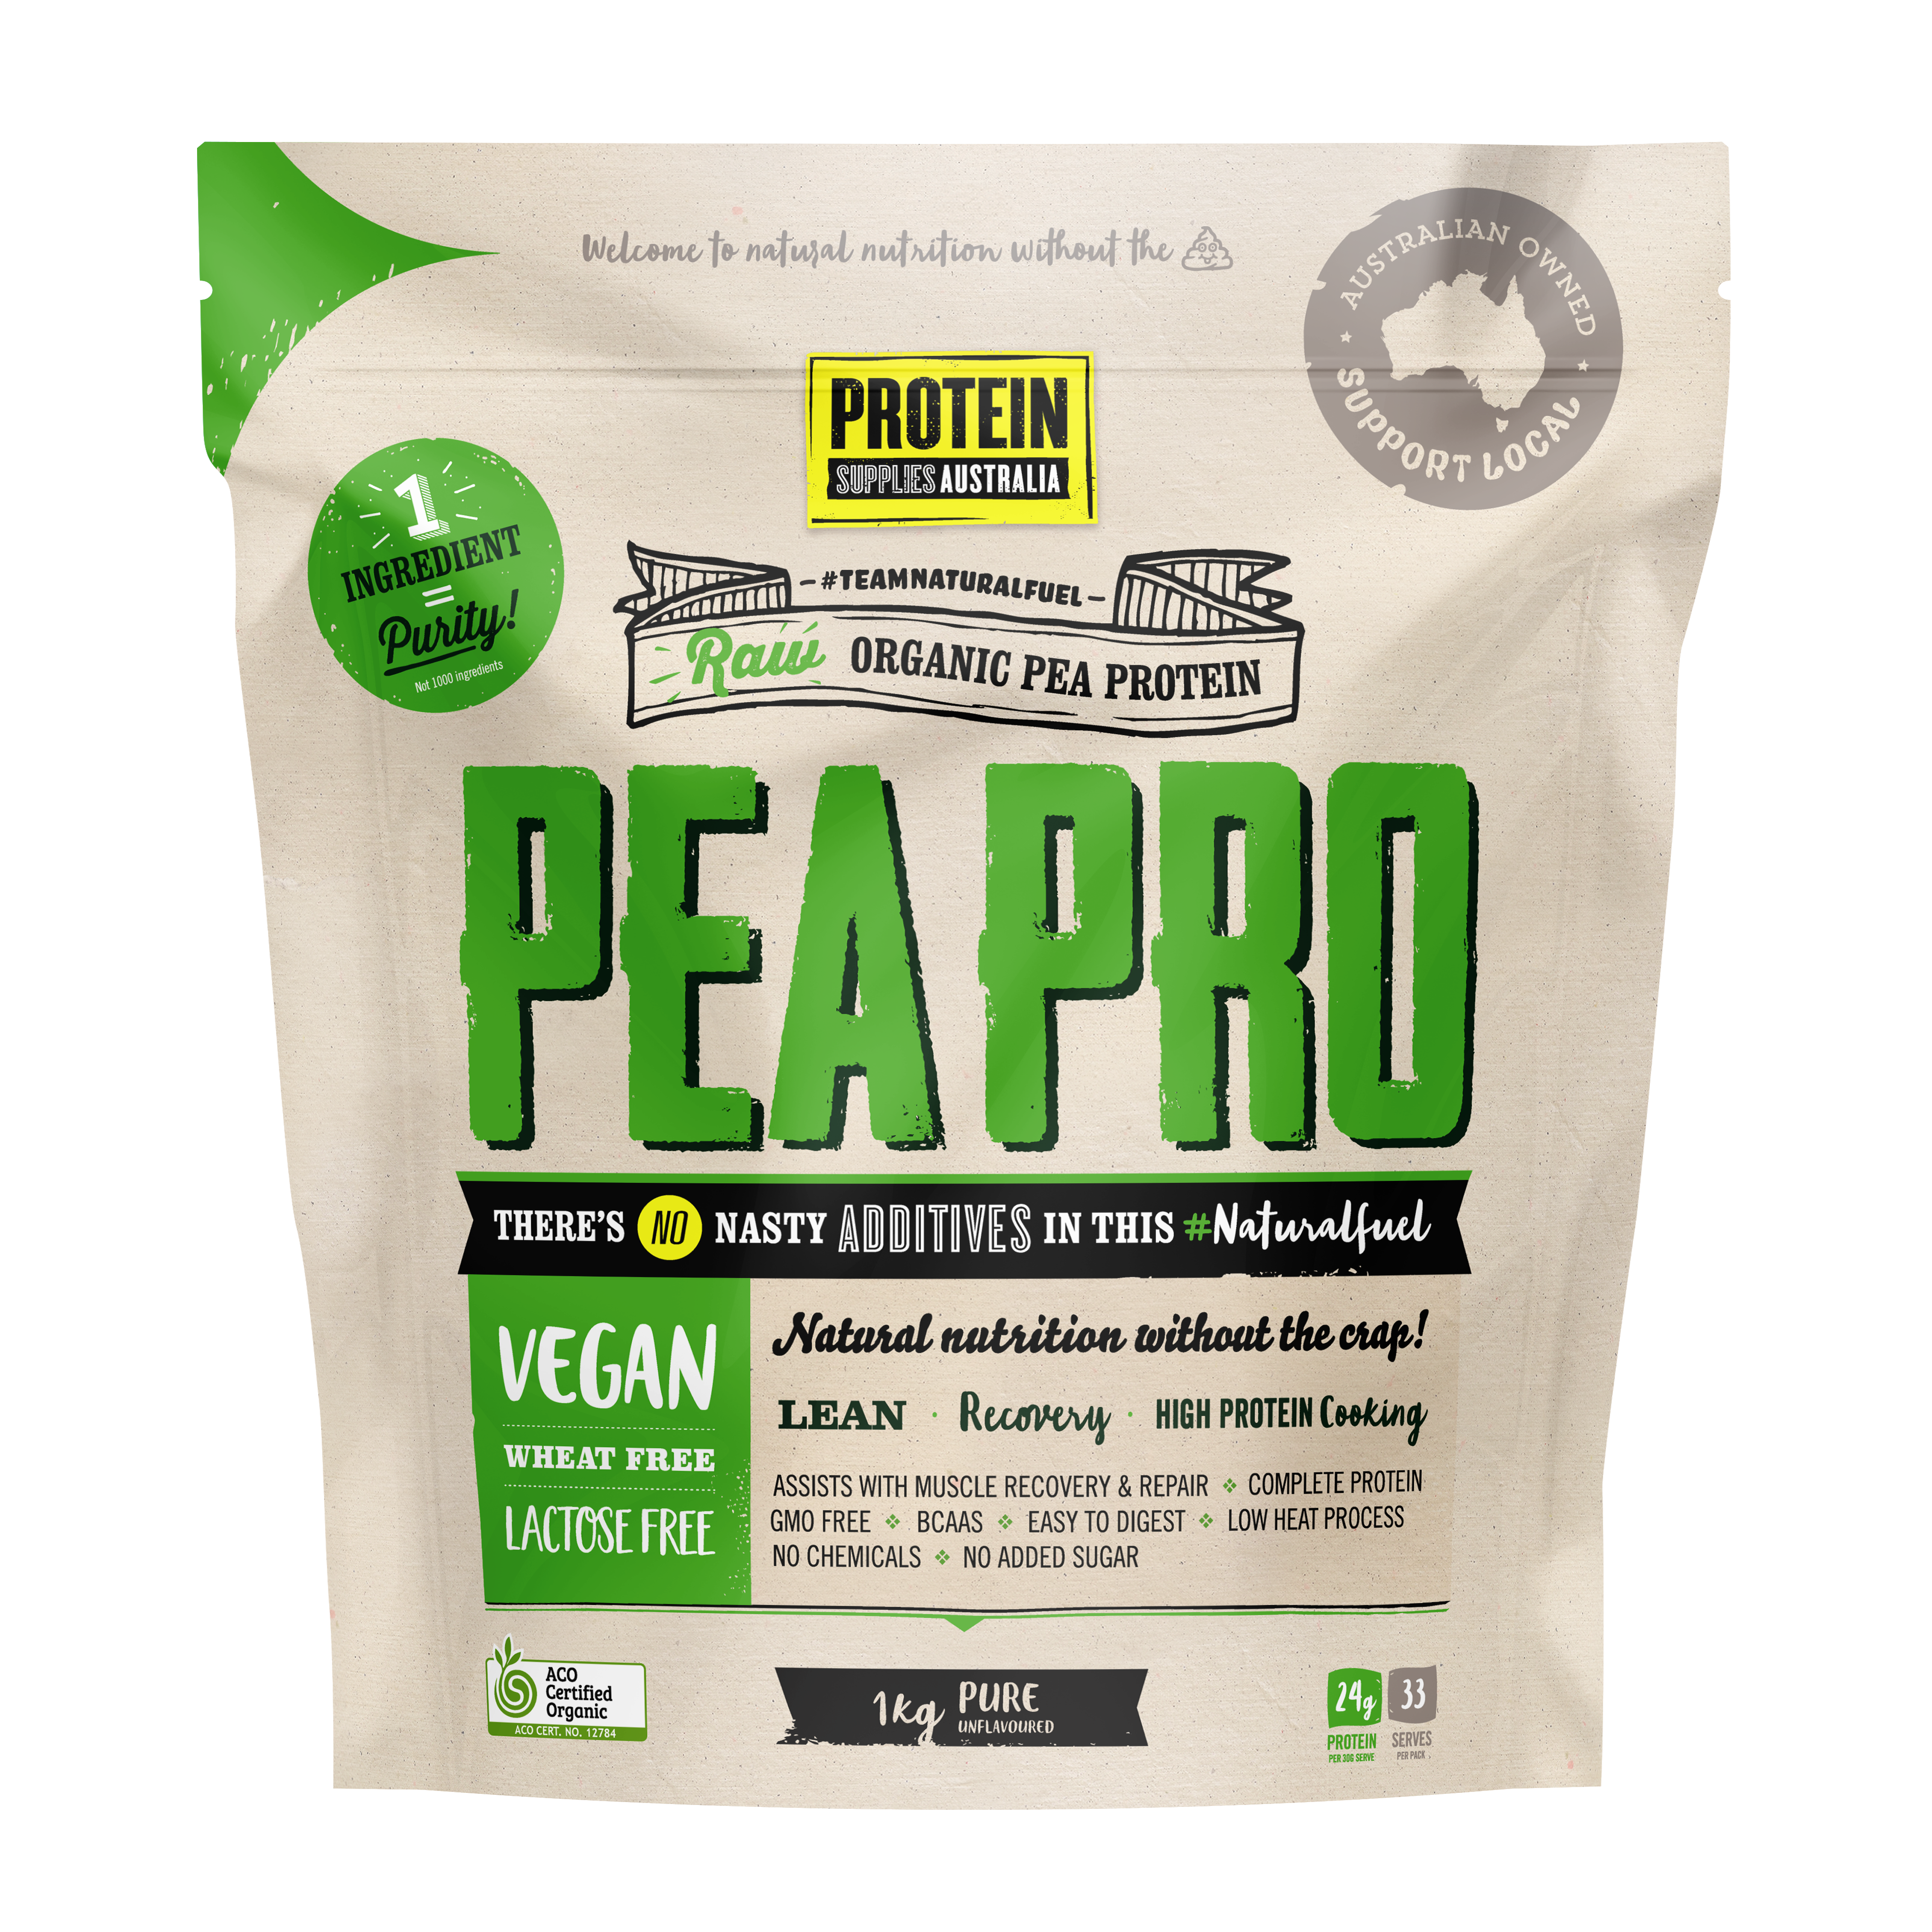 Pea Pro Pure - Protein Supplies Australia